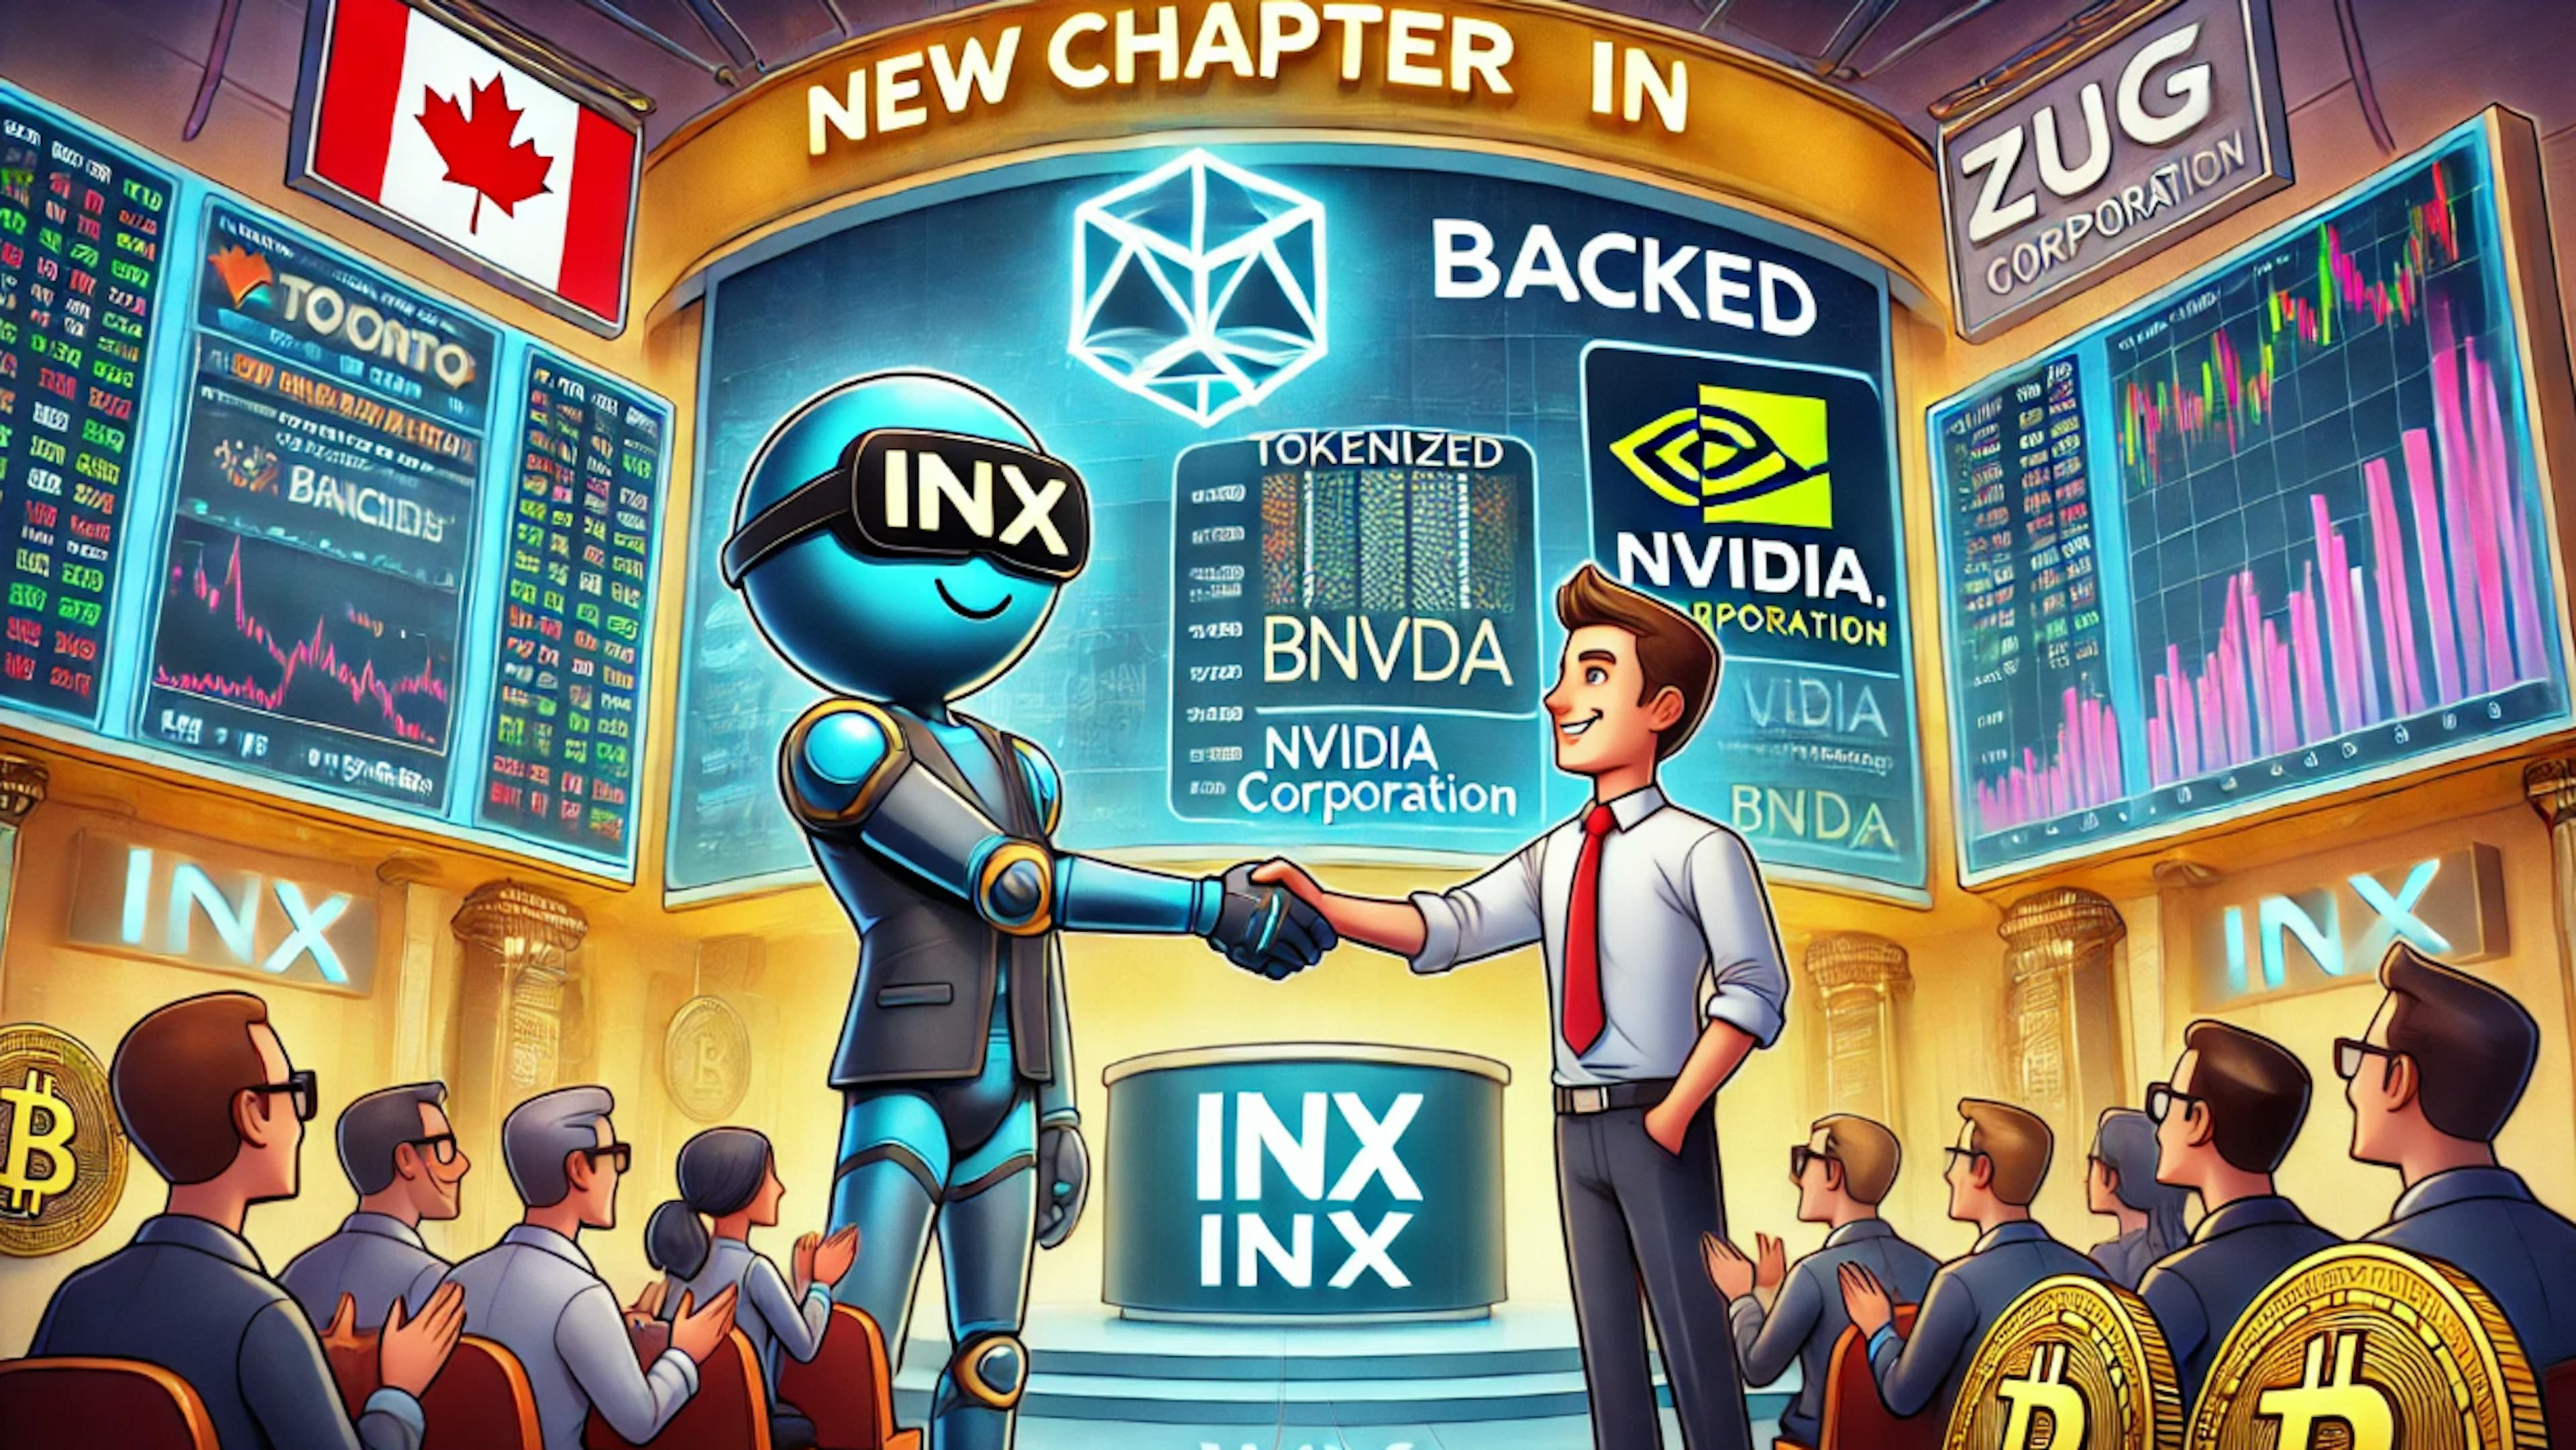 featured image - Tokenized NVIDIA Shares Hit Digital Market Through INX-Backed Partnership